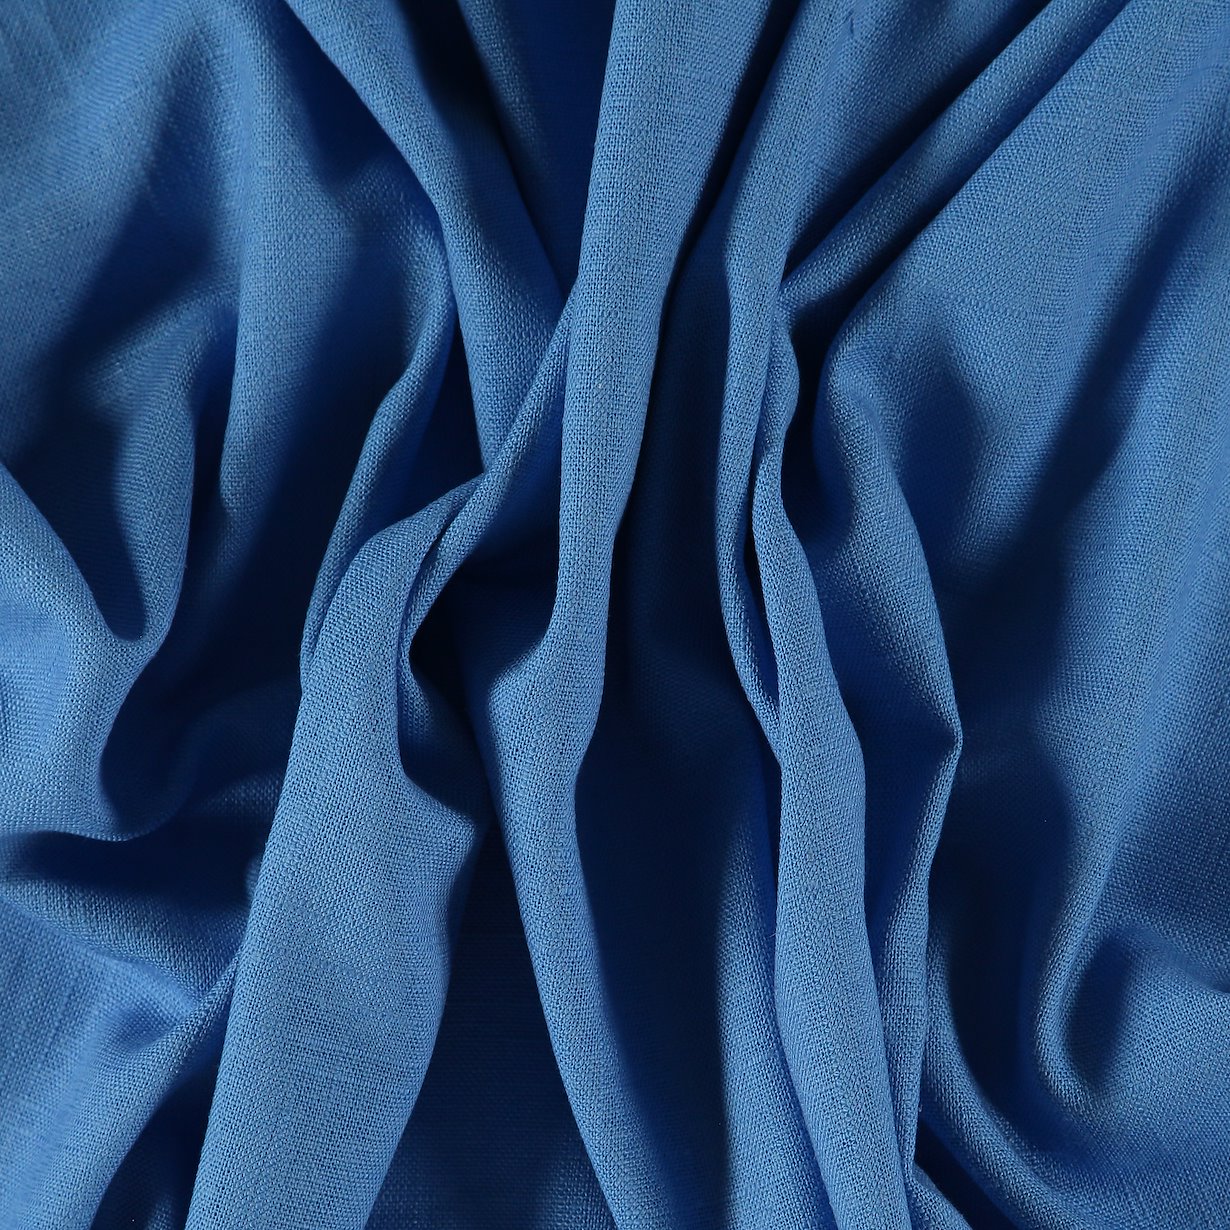 Coarse linen/viscose light cobalt blue